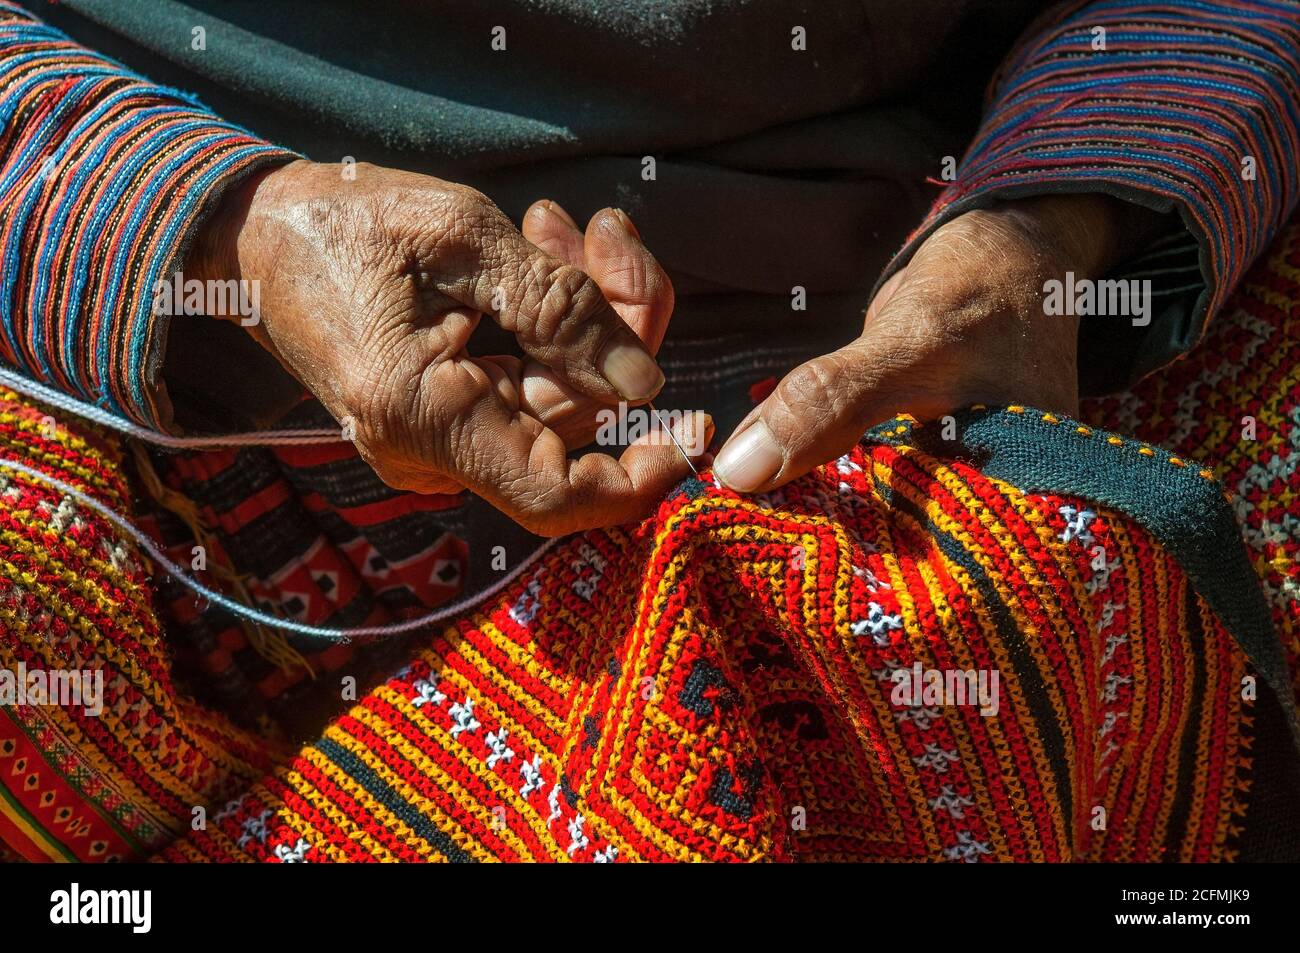 Manos de una mujer Hmong negra cosiendo tela tradicional colorida y otras artes y artesanías con sus manos en la luz del sol, Vietnam del Norte. Foto de stock